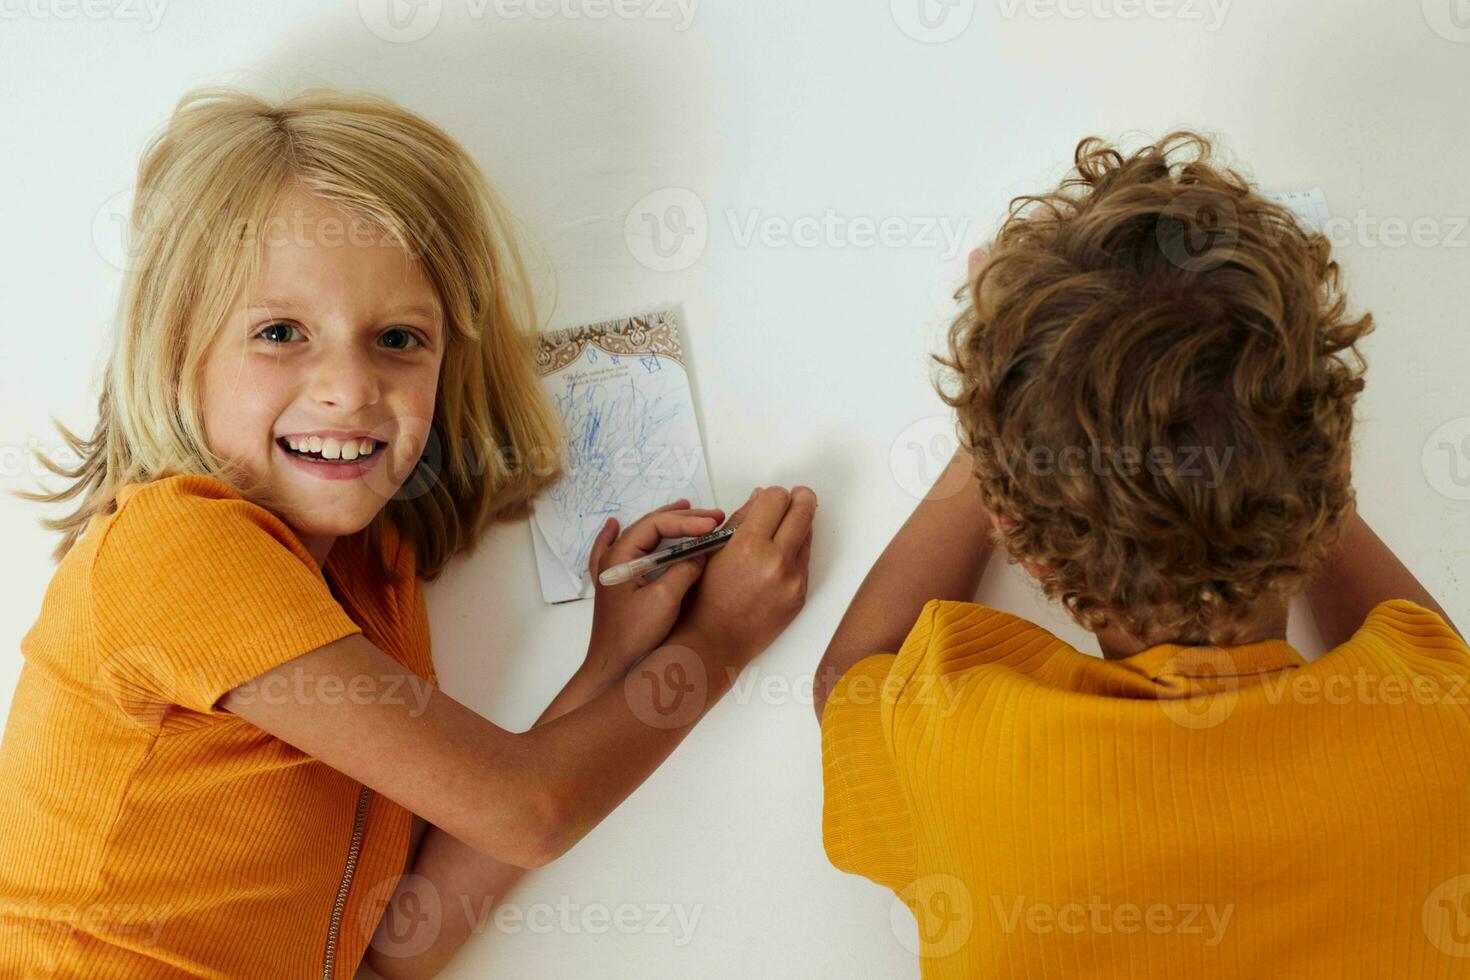 piccolo bambini emozioni disegno insieme bloc notes e matite isolato sfondo inalterato foto